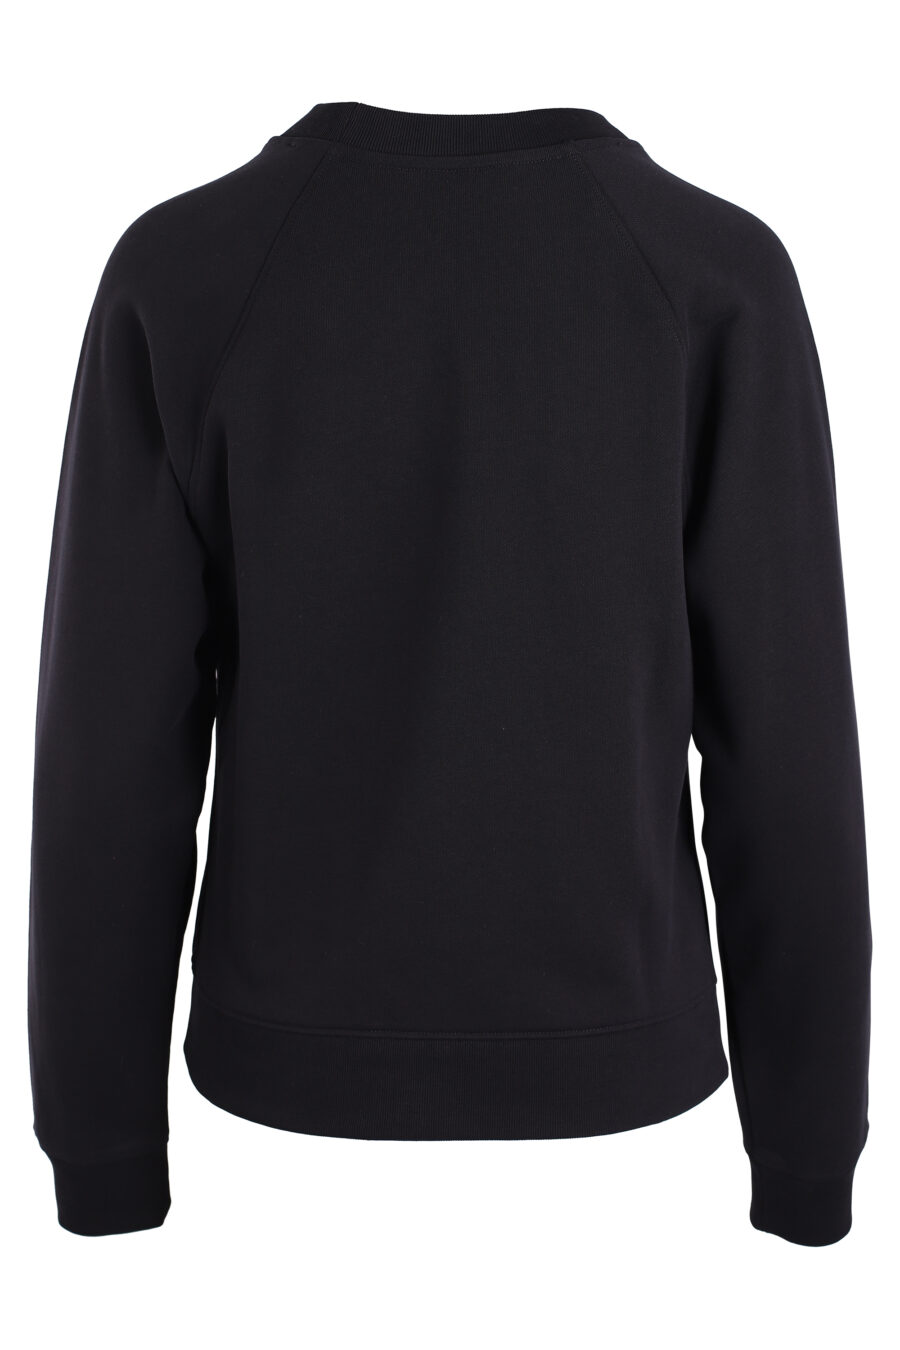 Black sweatshirt with "smiley" logo - IMG 3329